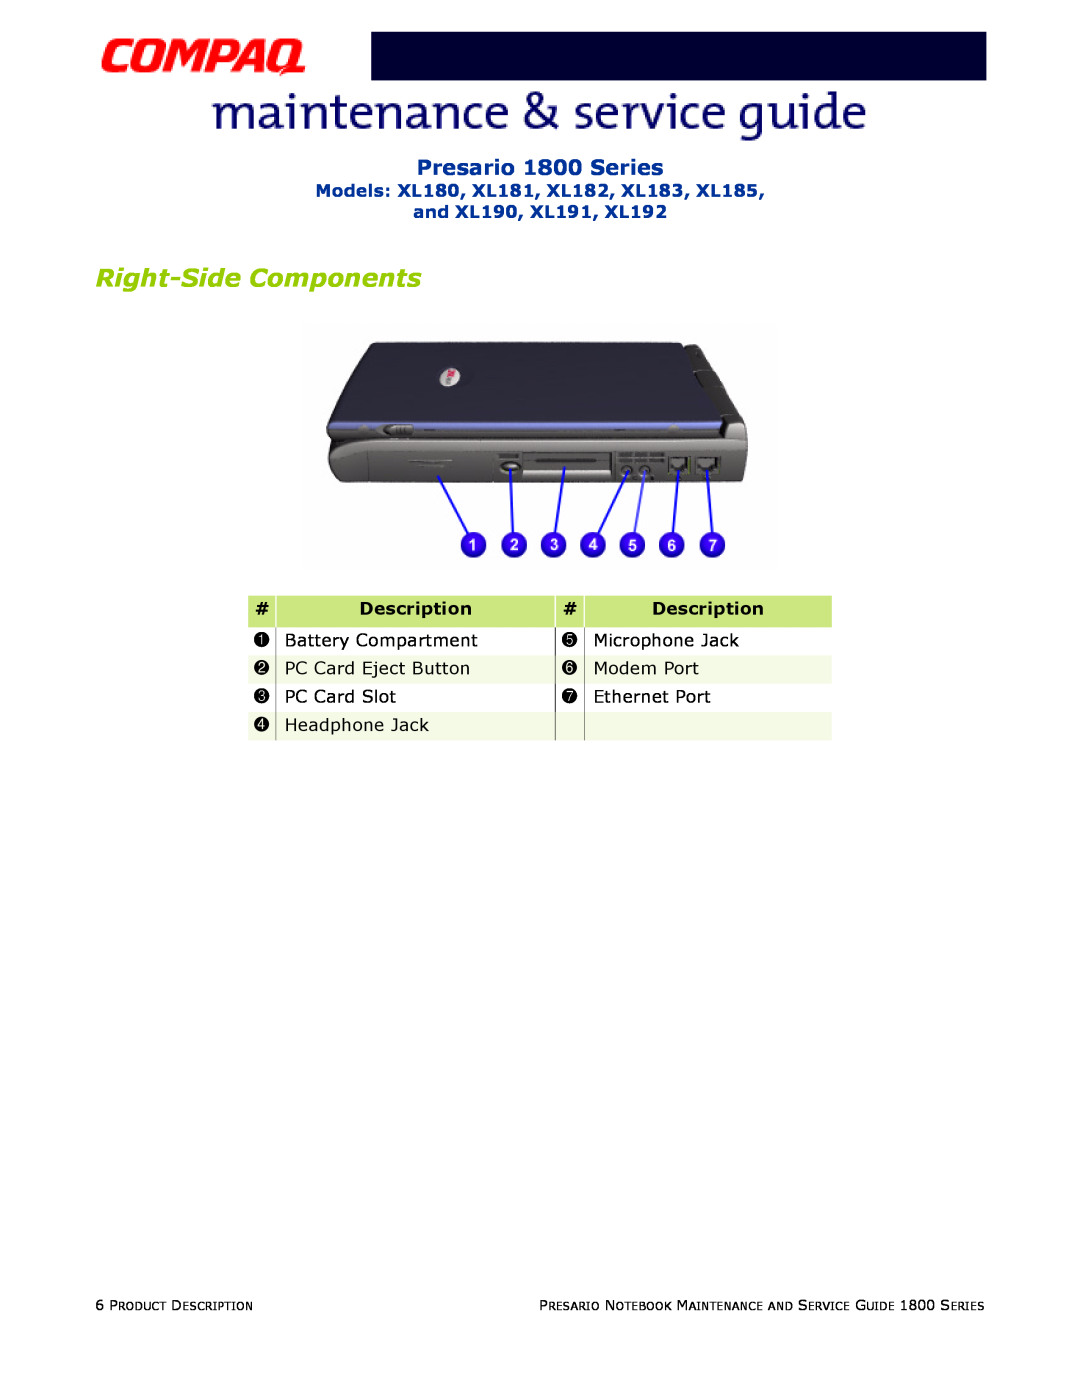 Compaq Right-Side Components, Presario 1800 Series, Models XL180, XL181, XL182, XL183, XL185 and XL190, XL191, XL192 